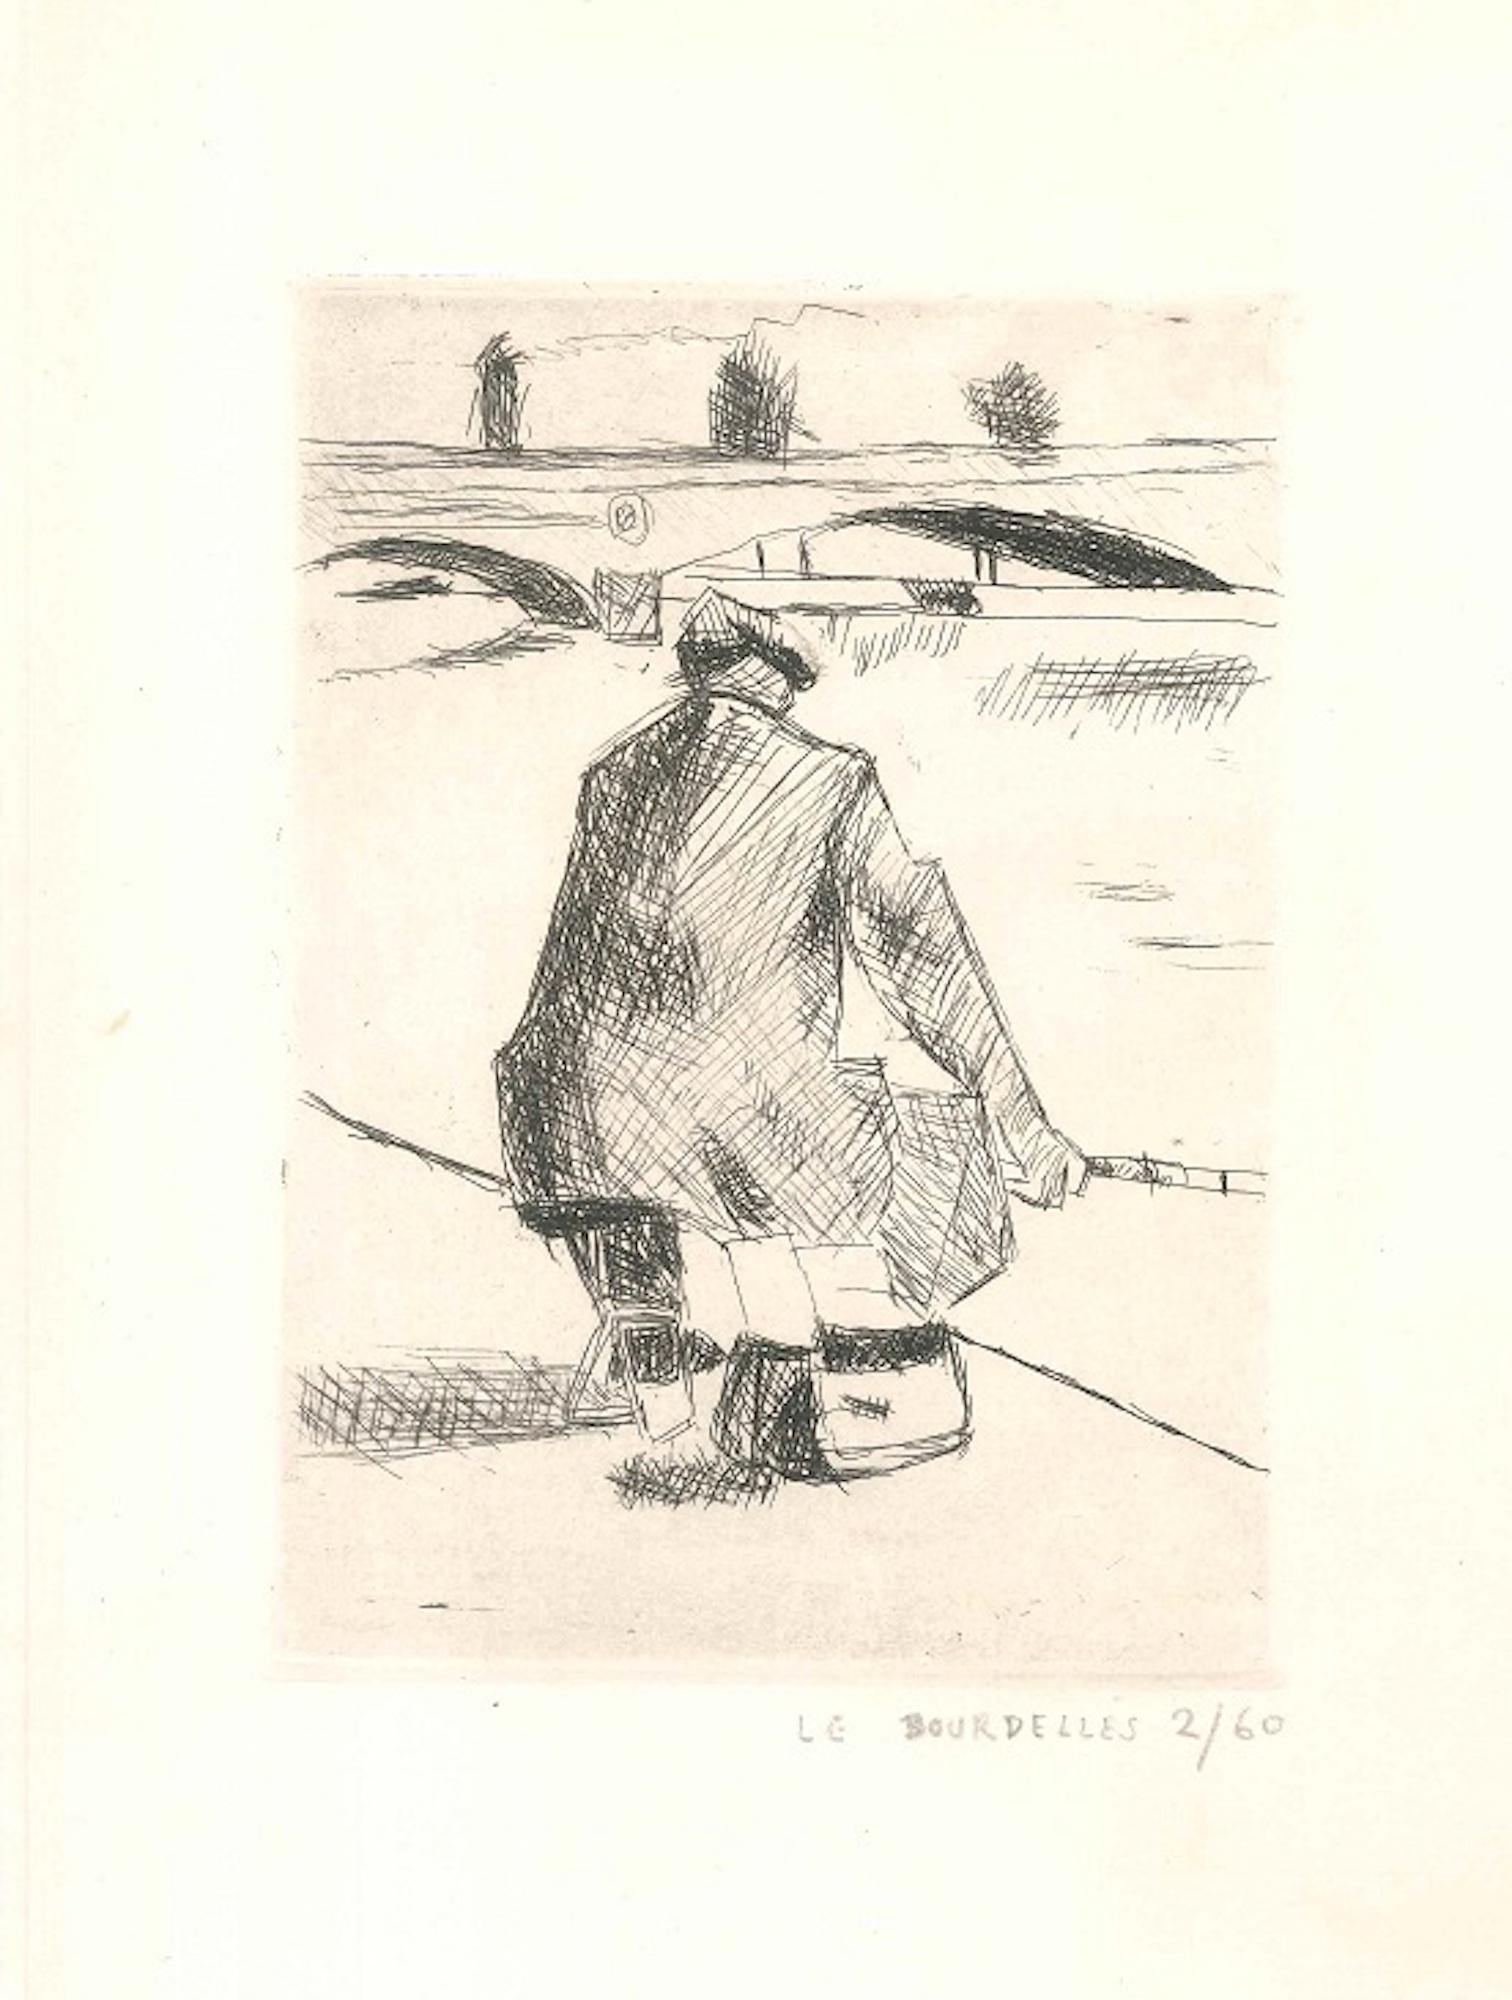 Hervé Le Bourdelles Figurative Print - Fishing Man - Original Etching by H. Le Bourdelles - 1920s